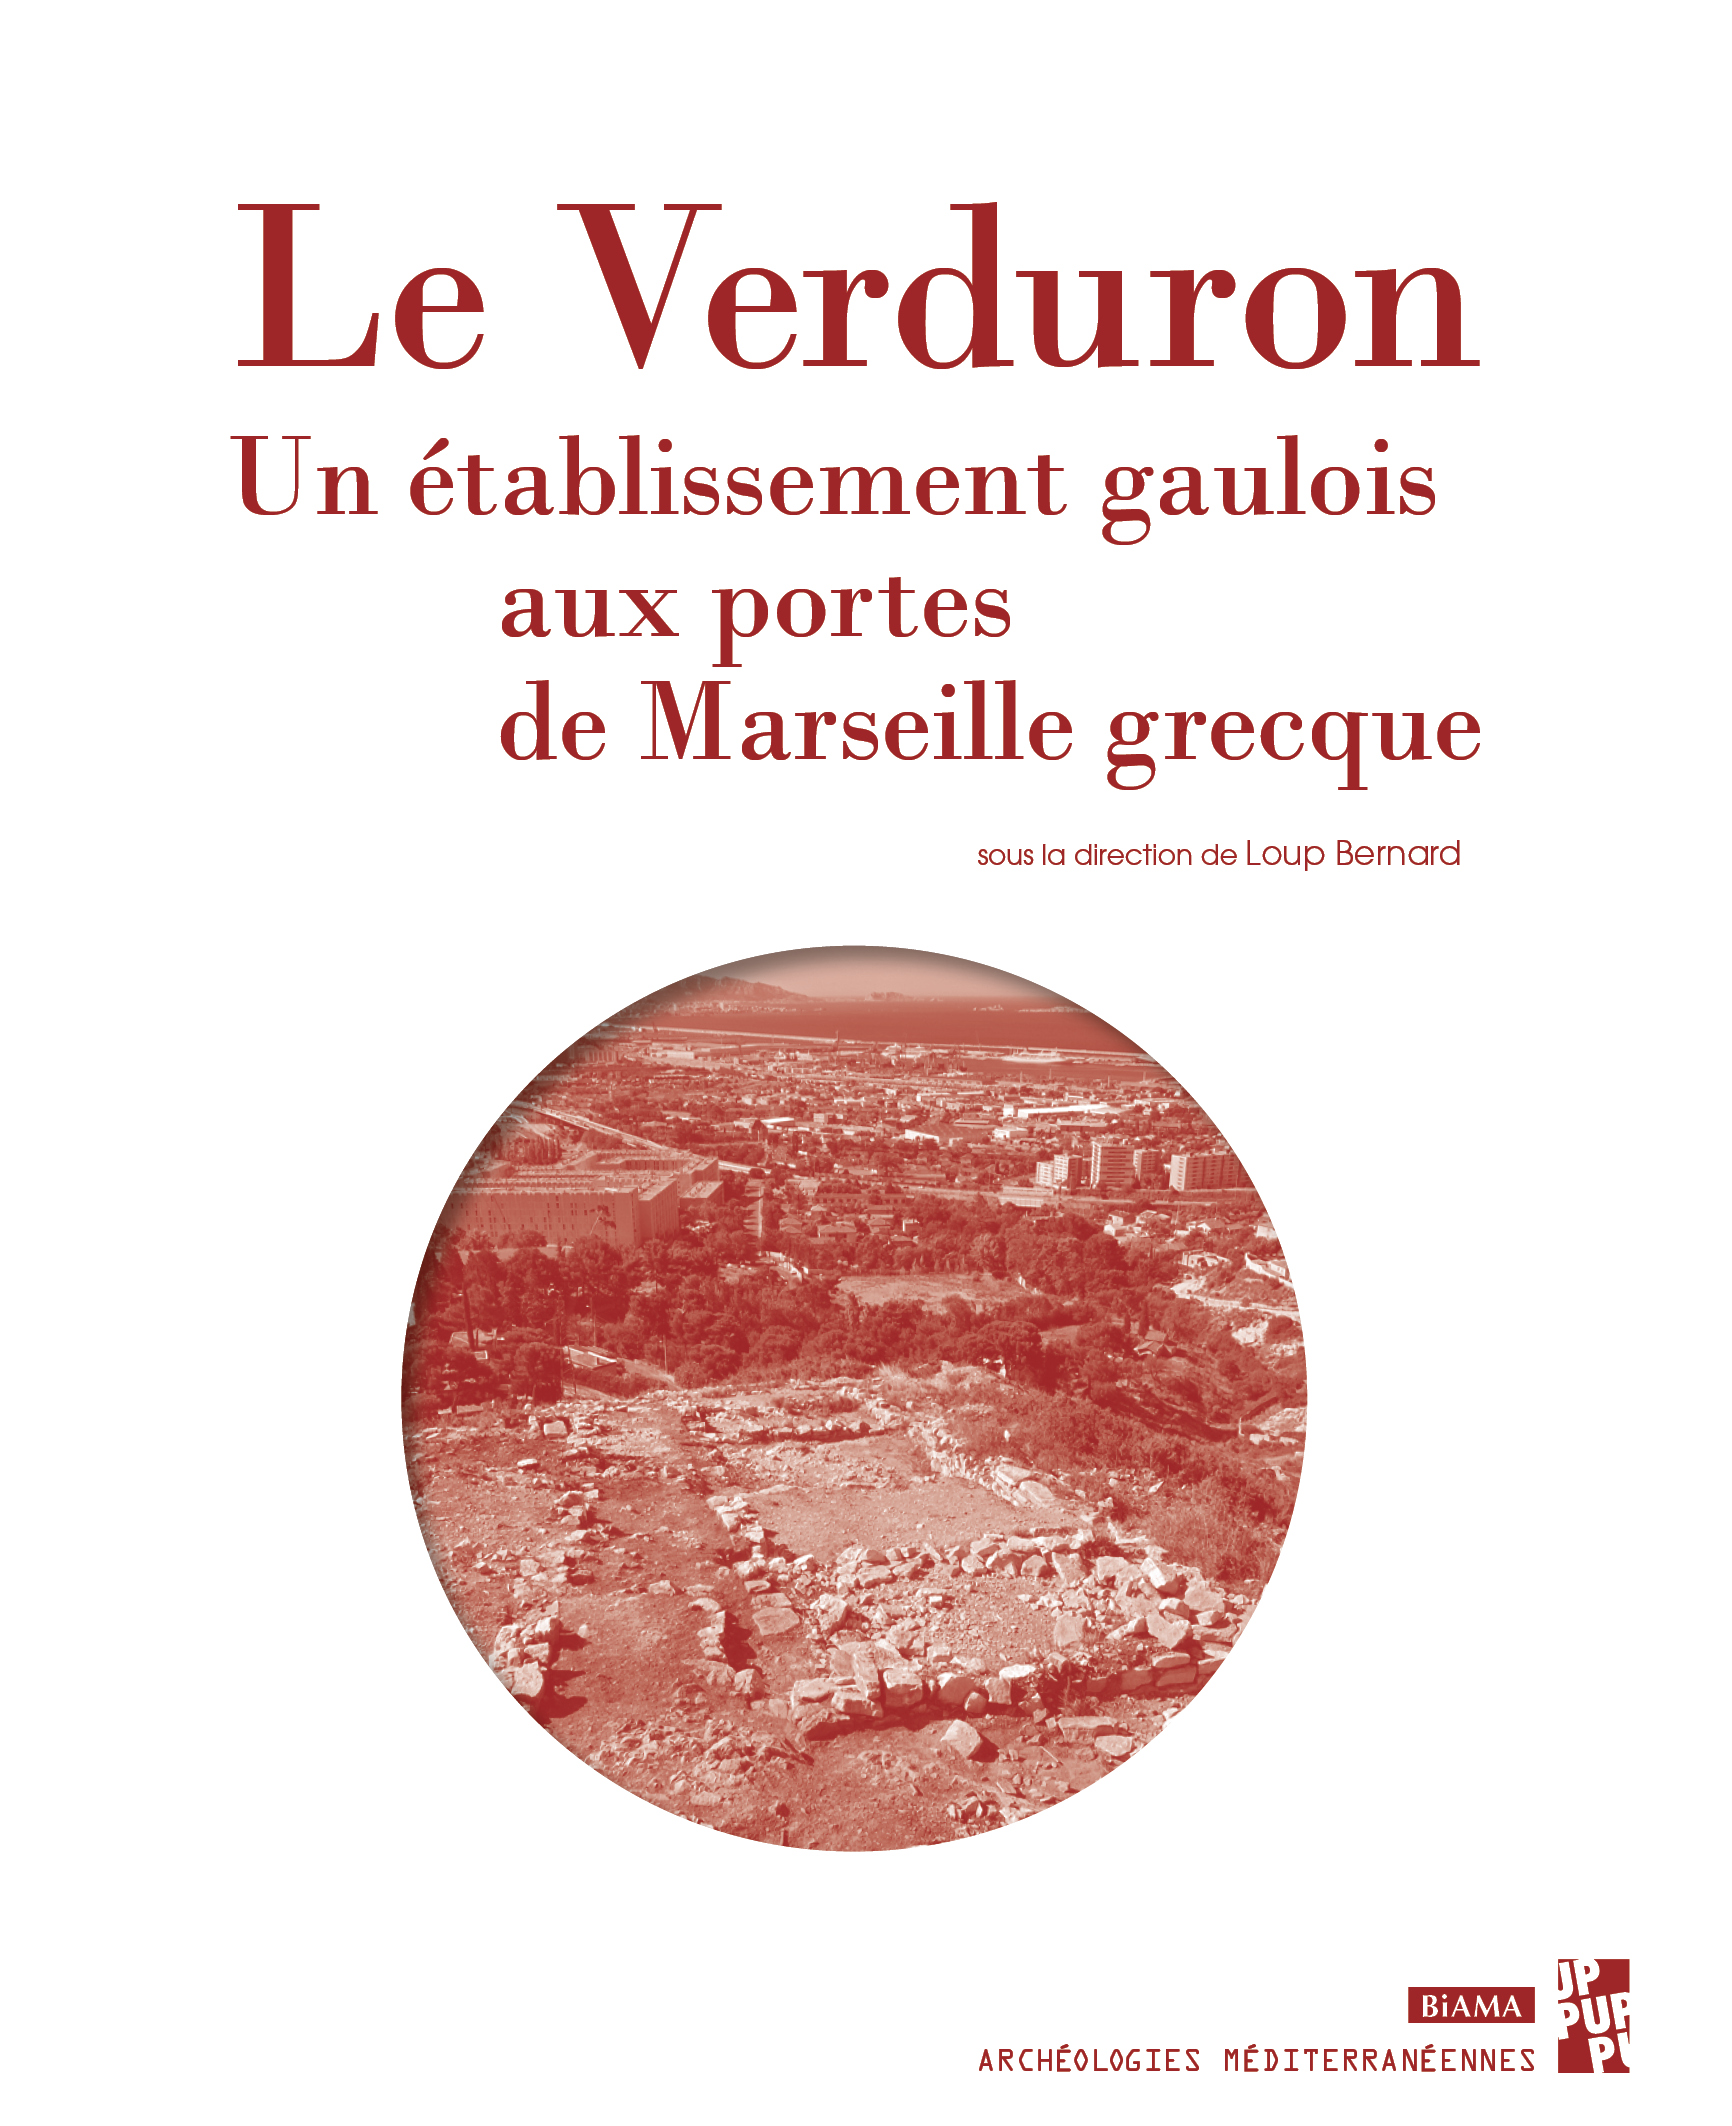 Le Verduron. Un établissement gaulois aux portes de Marseille grecque, 2020, 220 p.